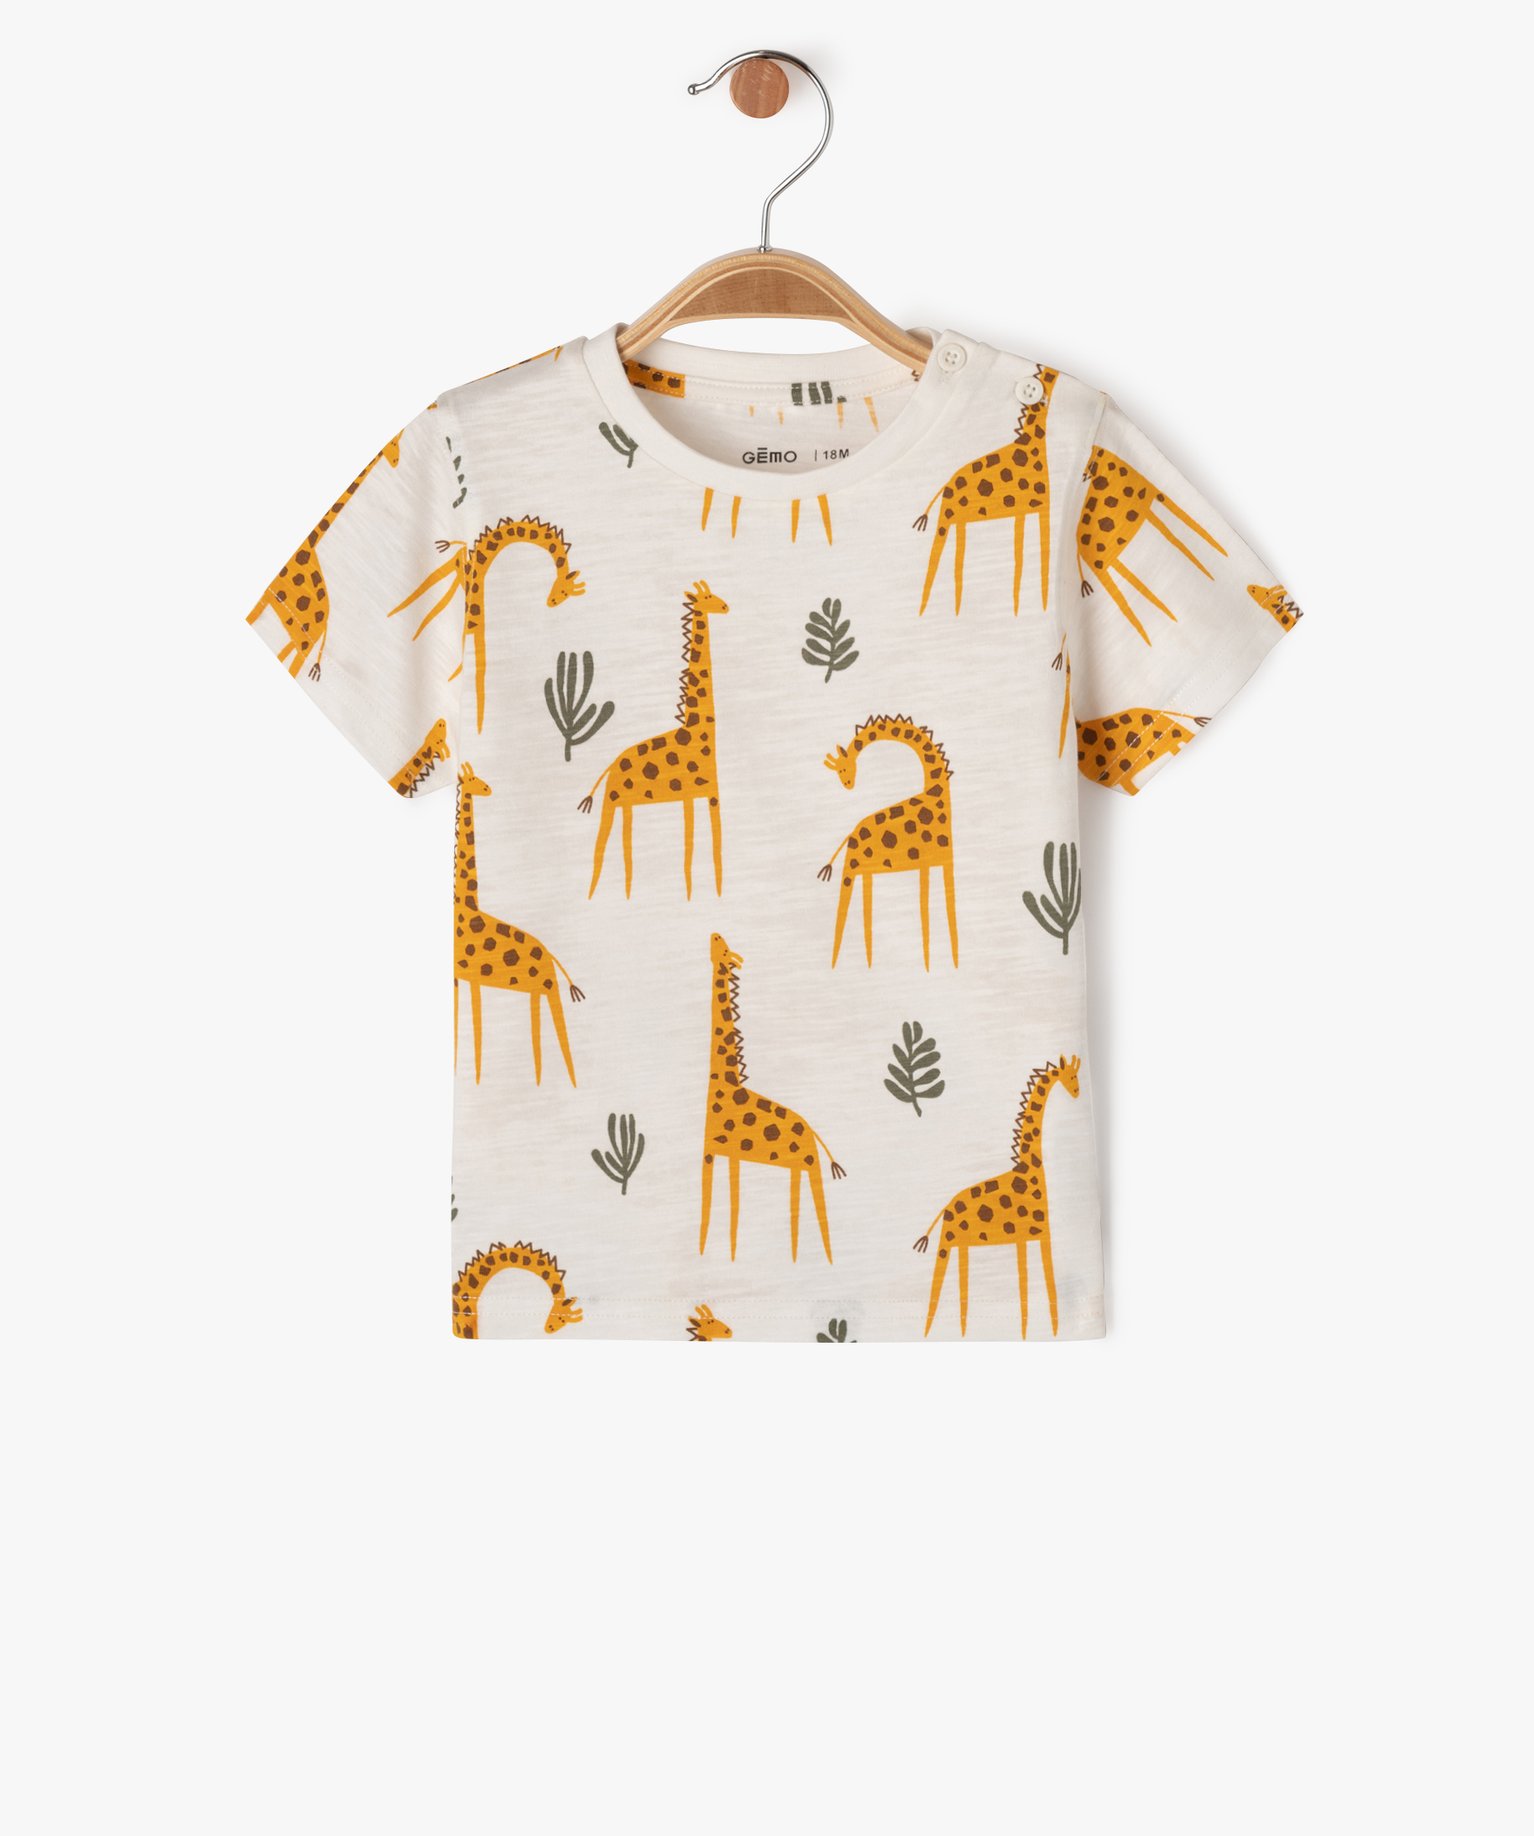 Tee-shirt à manches courtes à motifs animaux de la jungle bébé garçon - 6M - ecru - GEMO